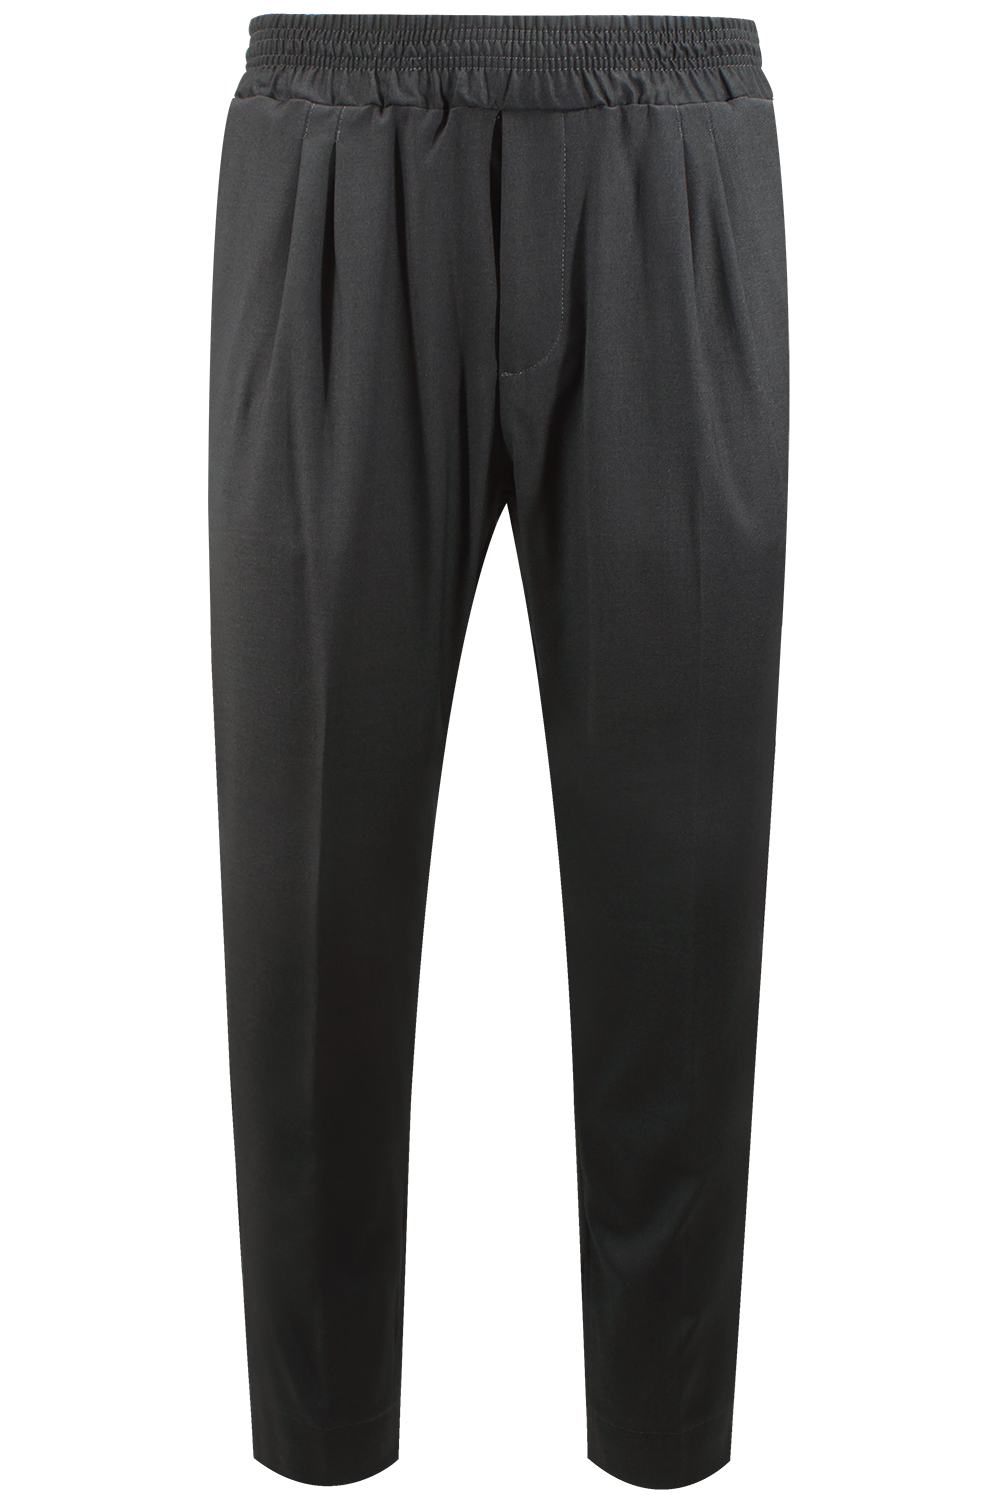 Pantalone con elastico in vita in cotone grigio scuro